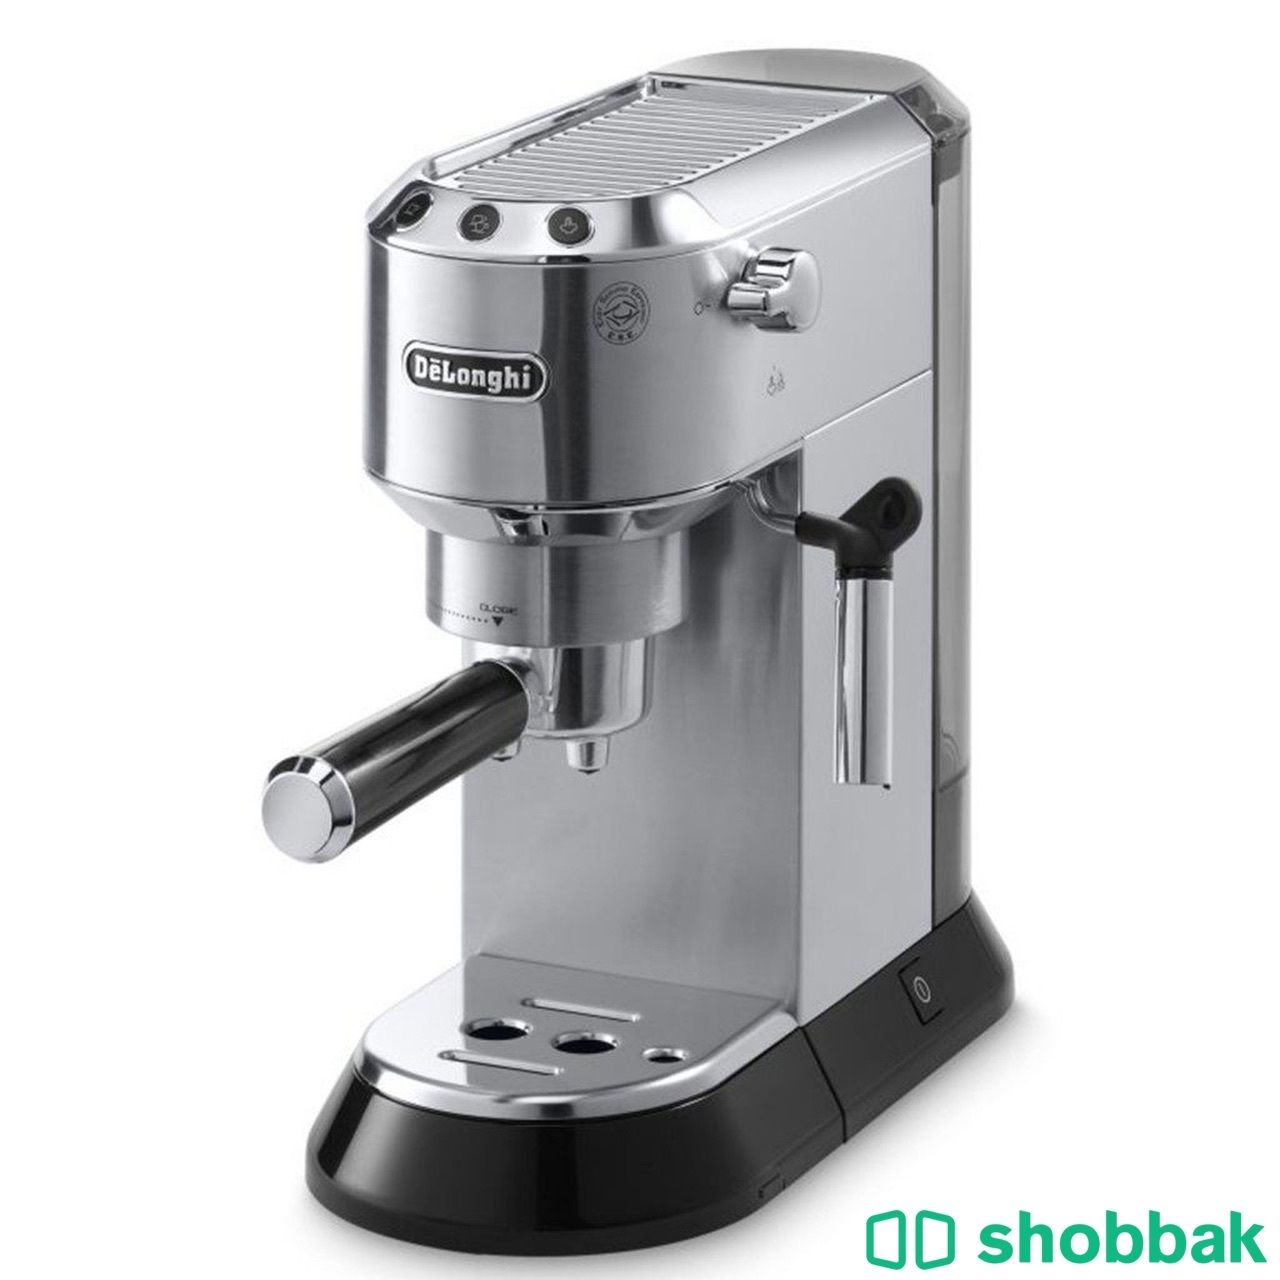 مكينة قهوة ديلونجي للبيع مع ملحقاتها Shobbak Saudi Arabia